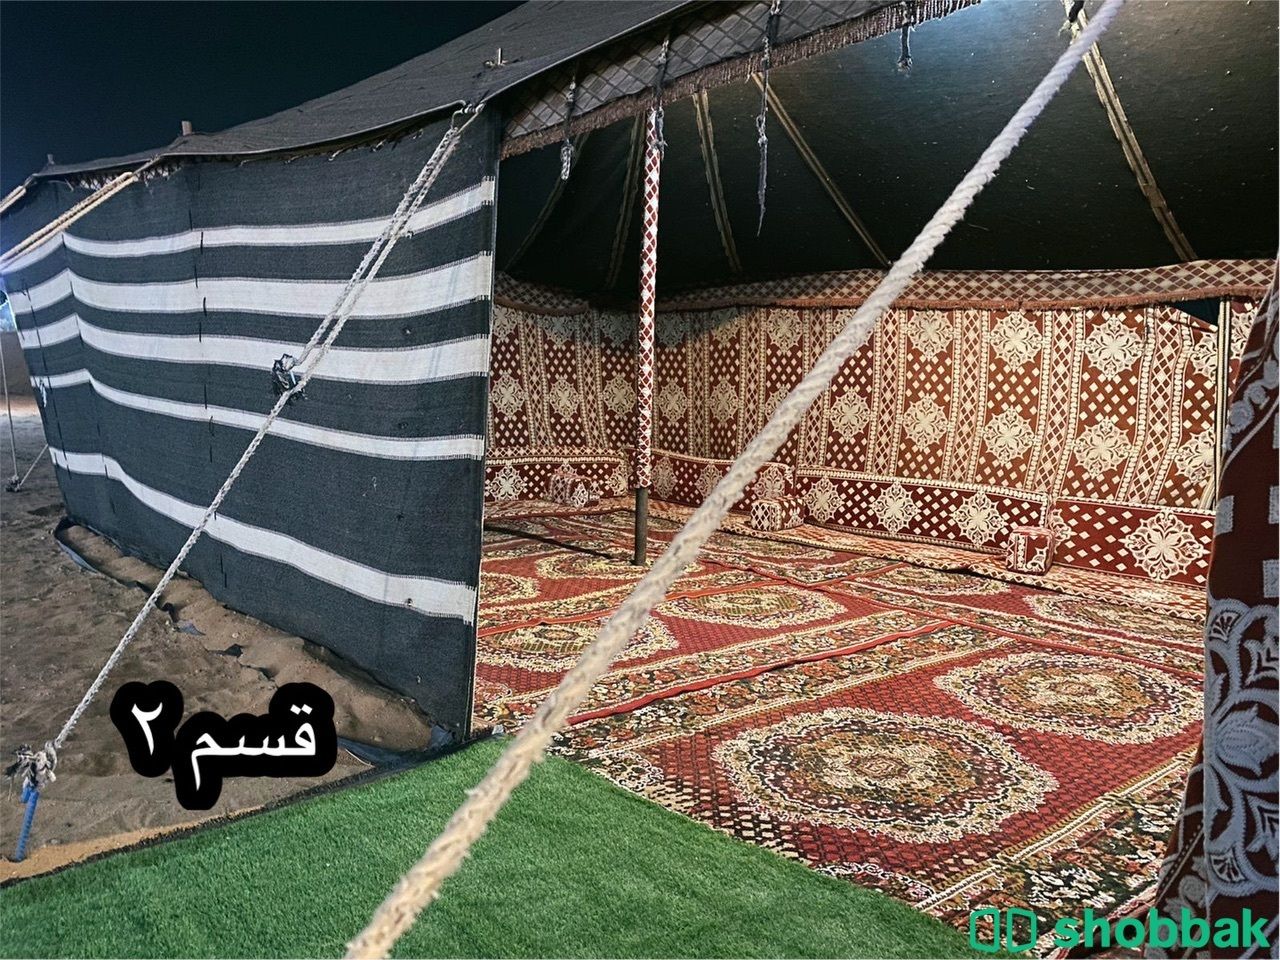 مخيم للايجار قبل تفتيش الثمامة Shobbak Saudi Arabia